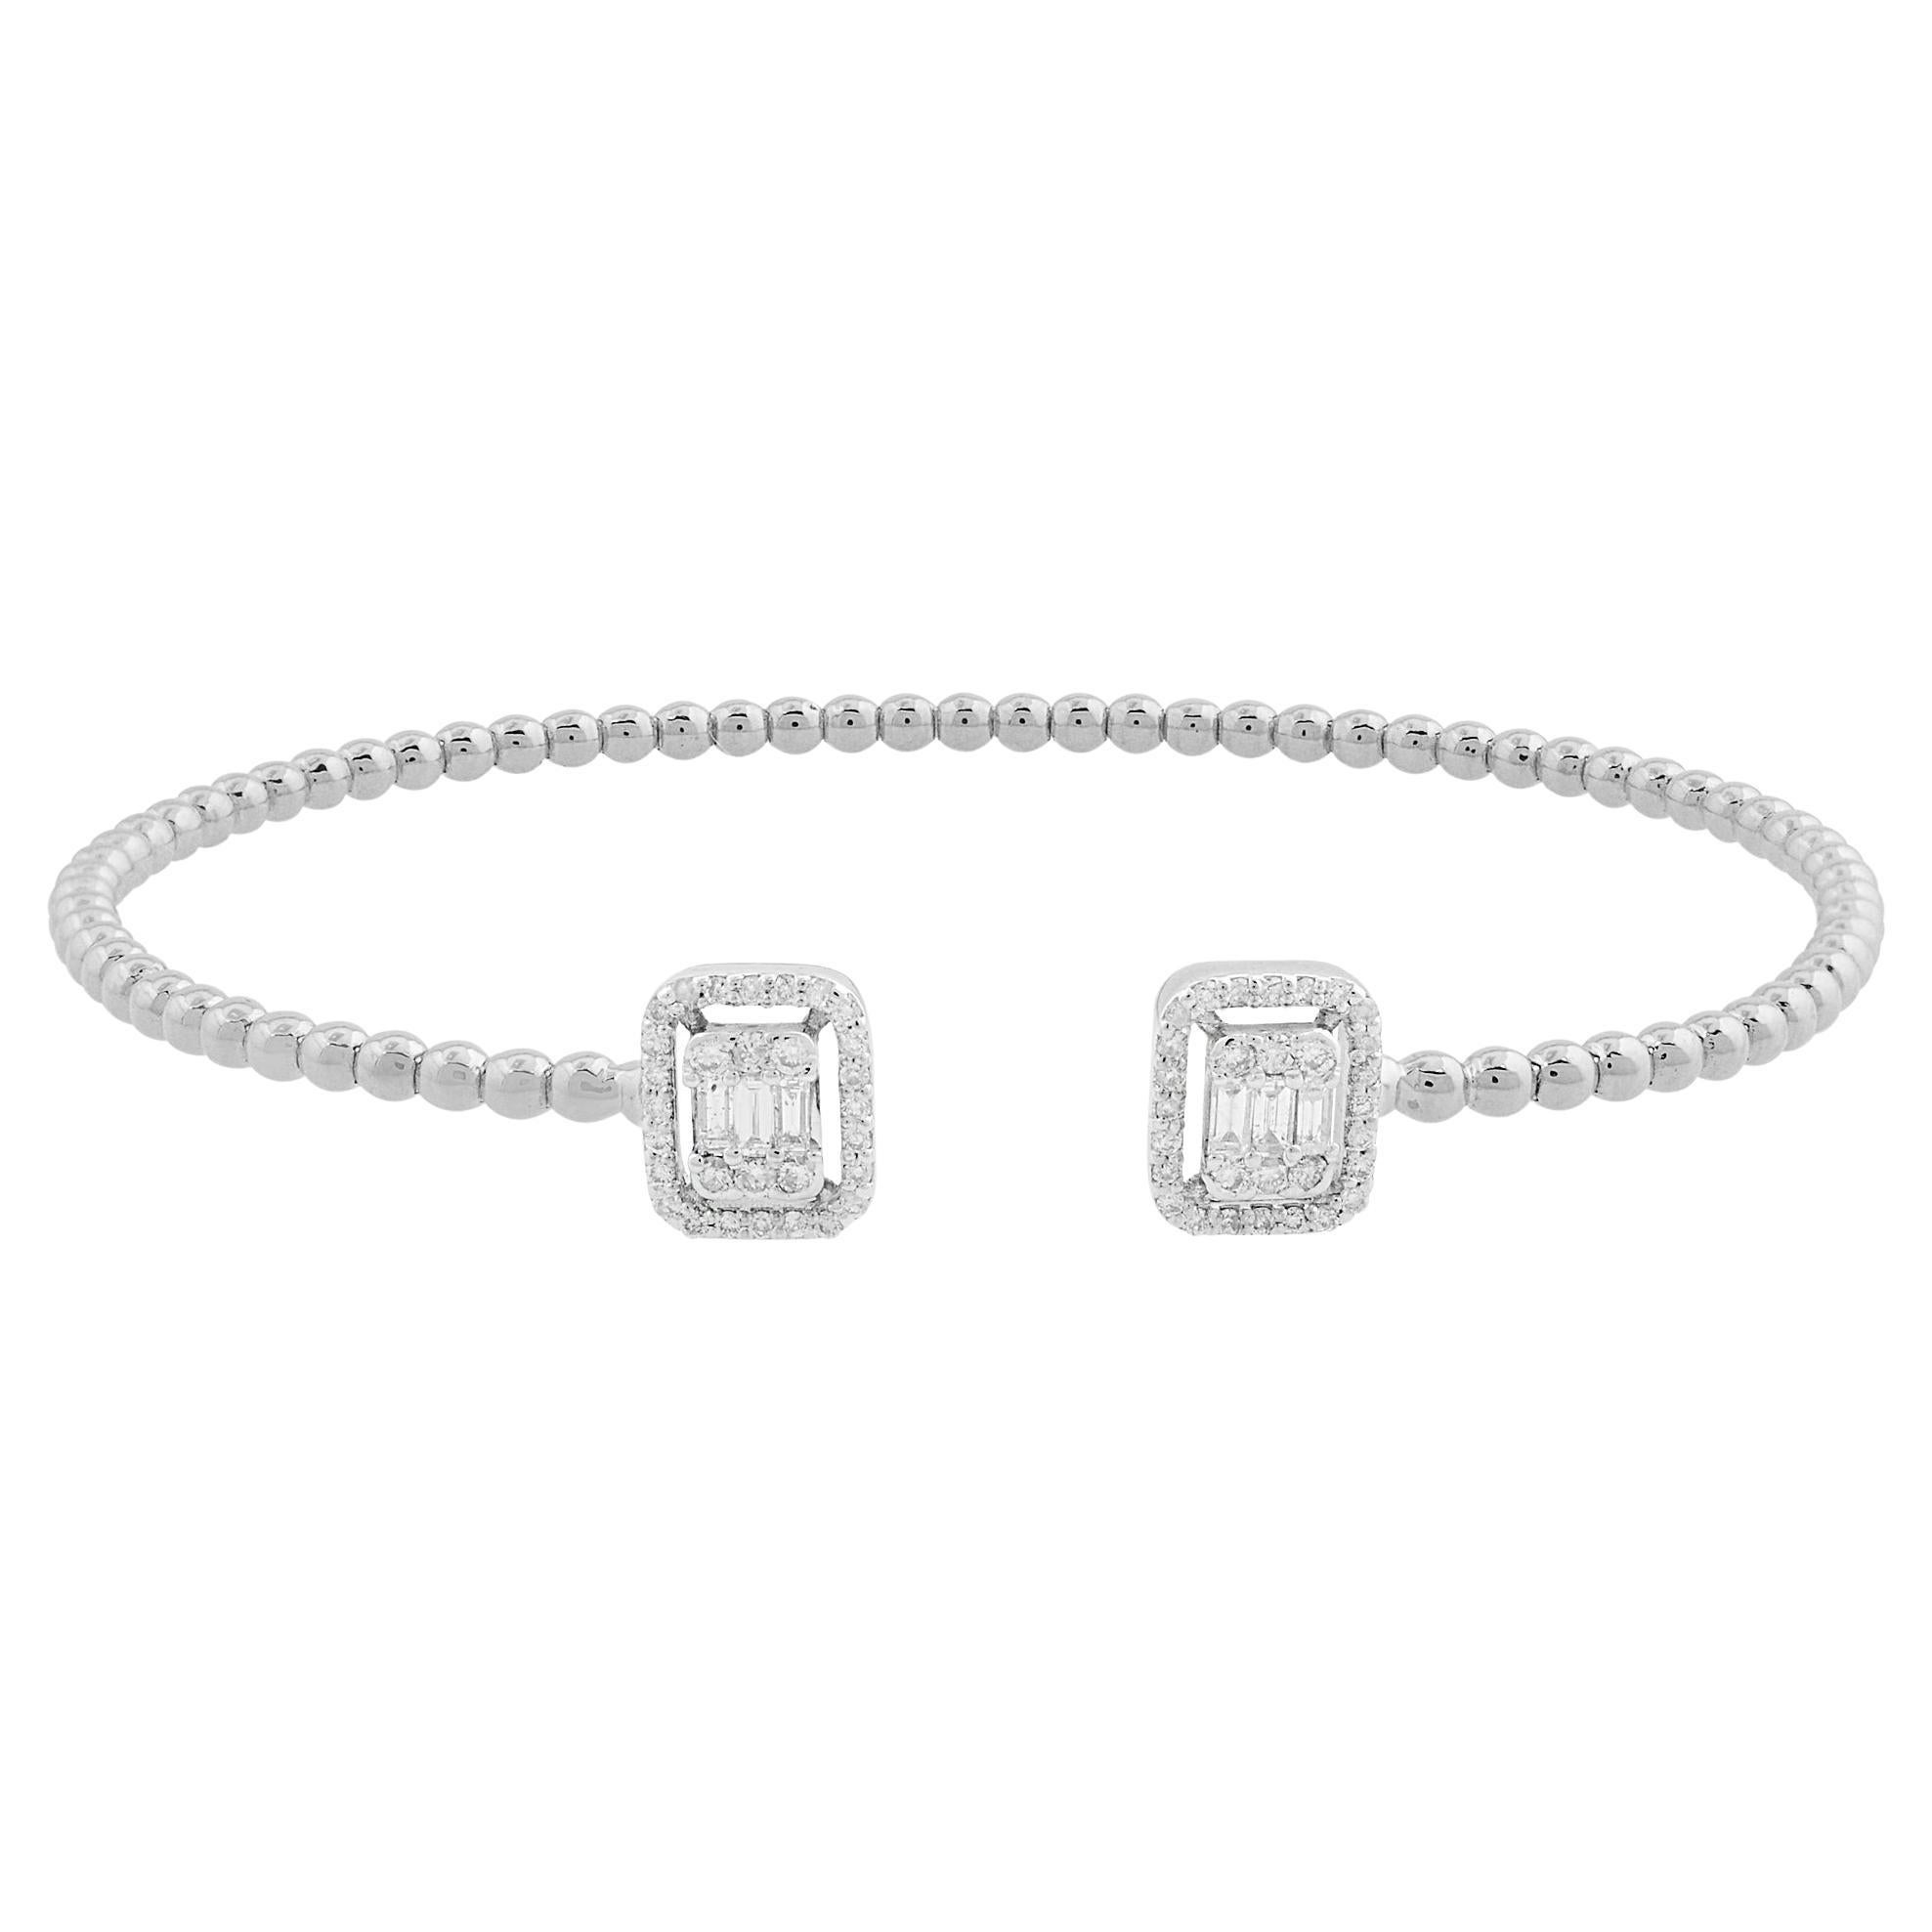 Bracelet manchette réaliste en or blanc 18 carats avec diamants baguettes ronds de 0,45 carat